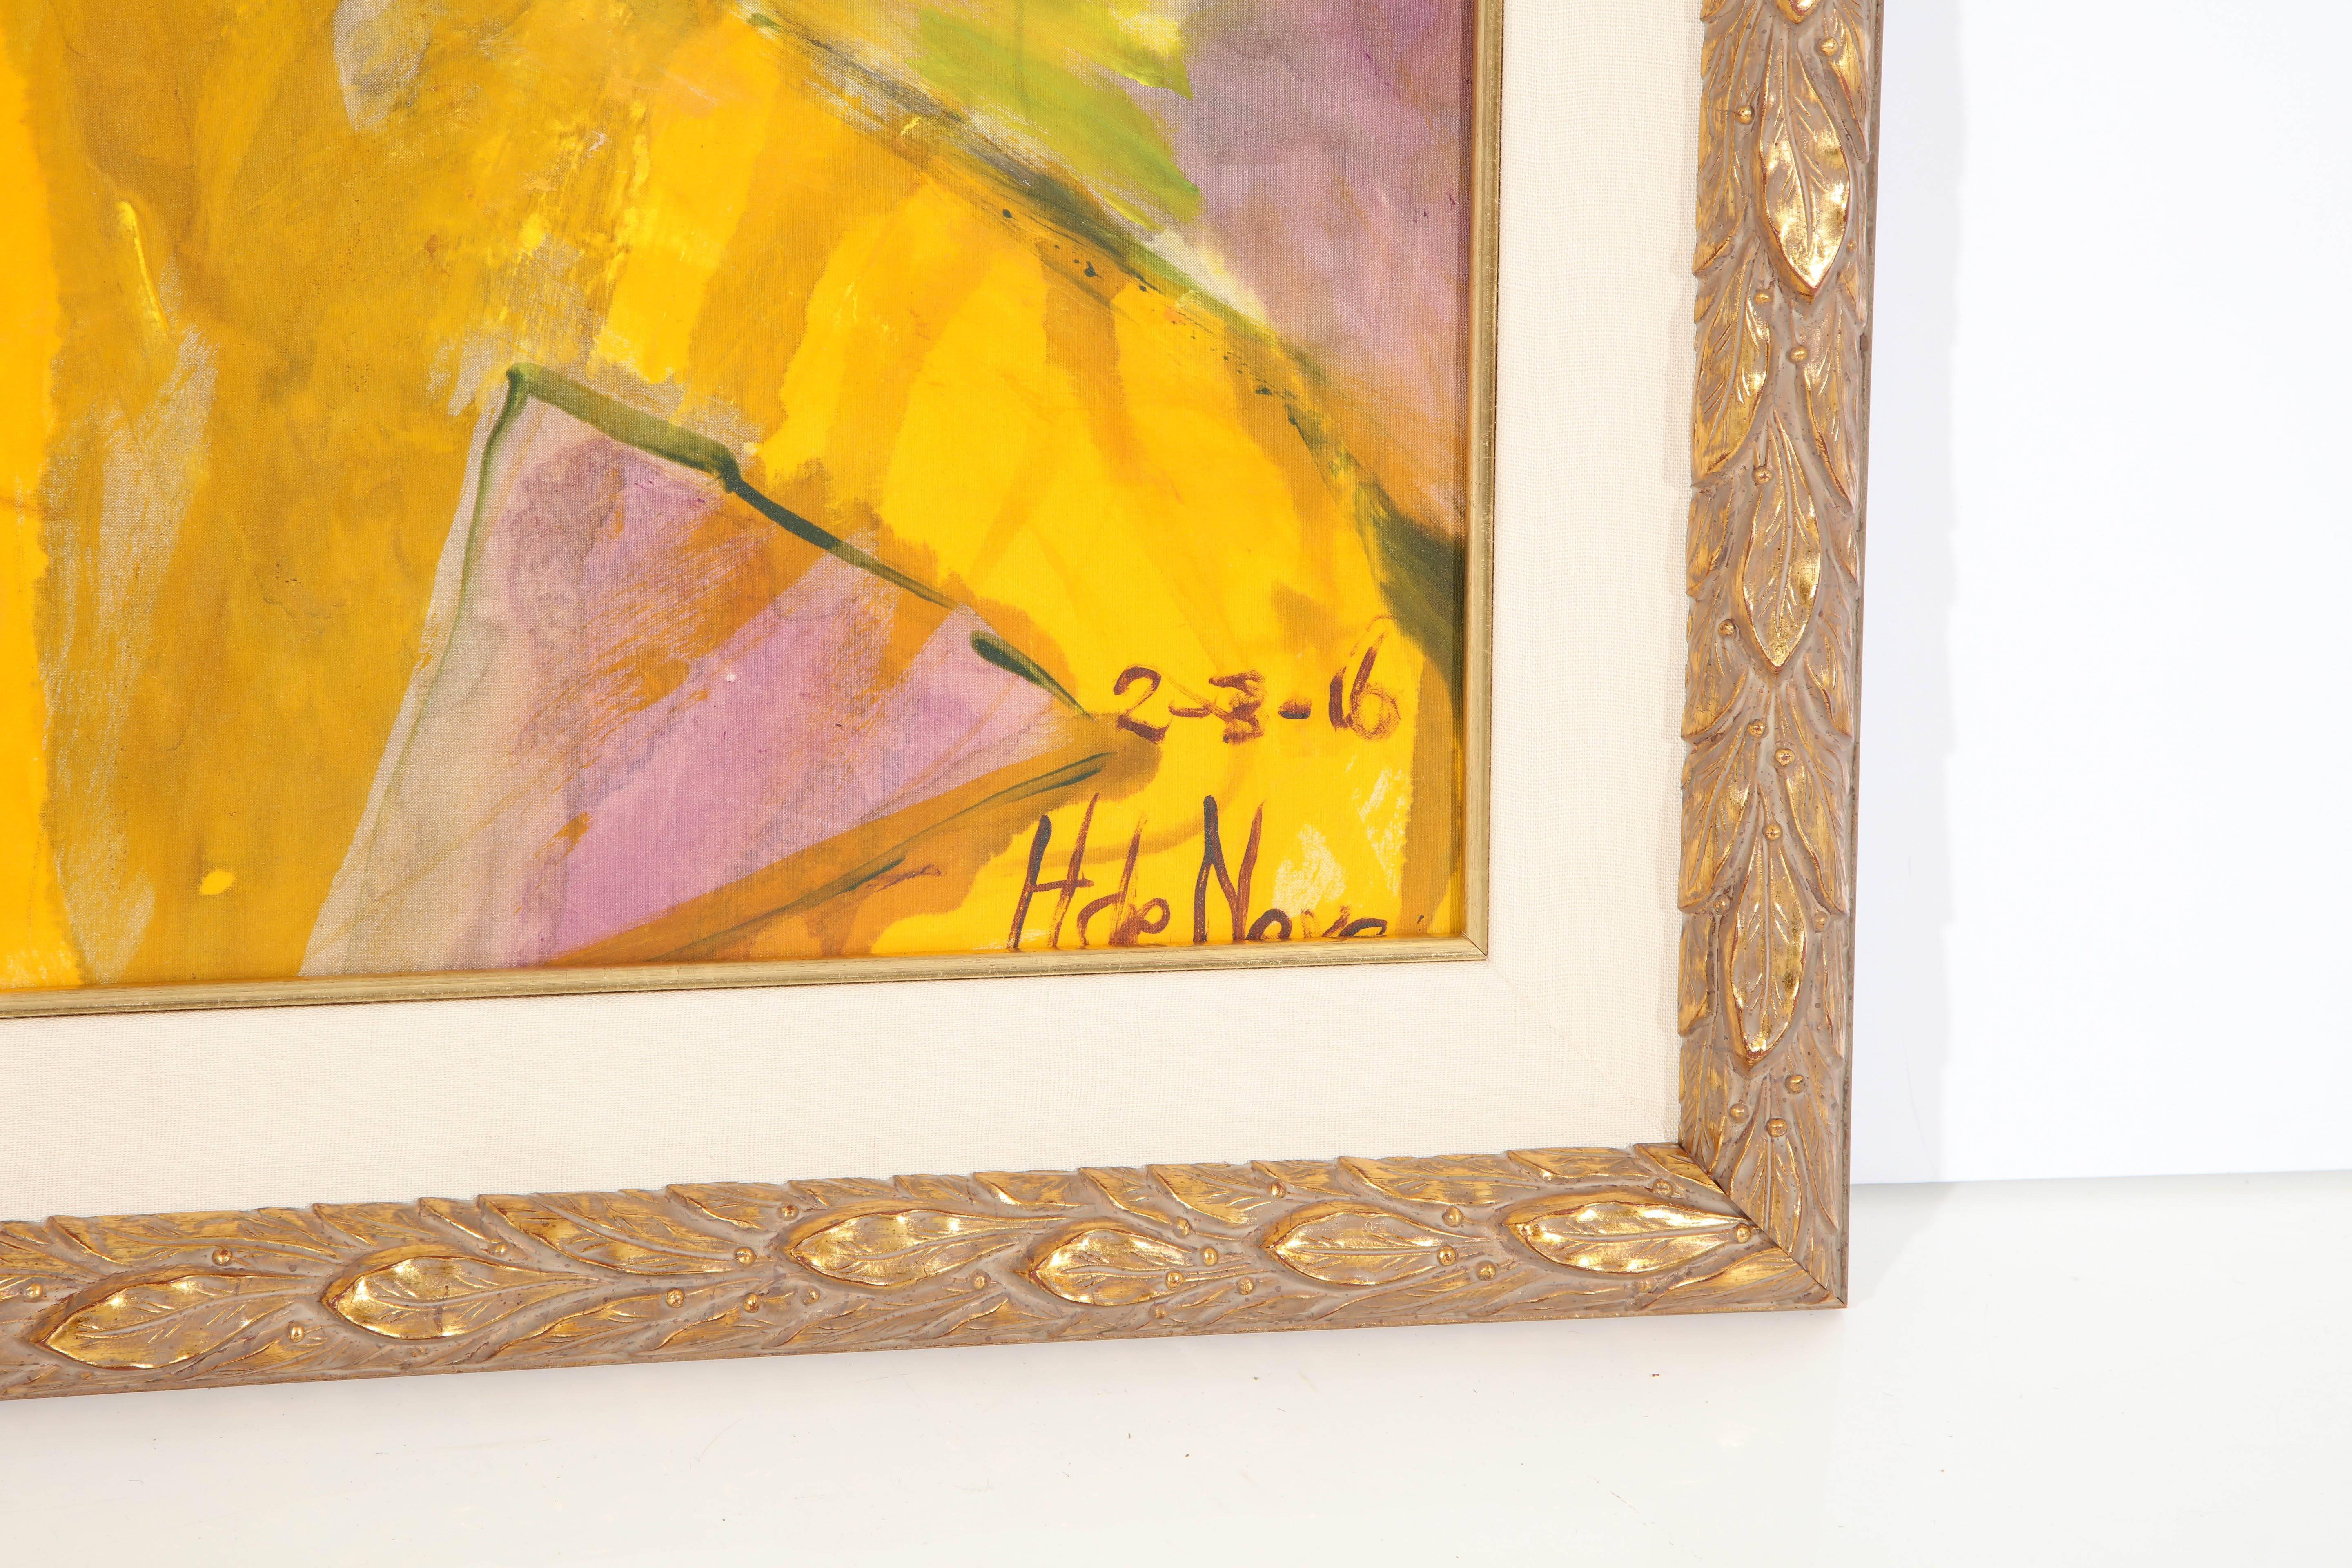 Dekoratives Gemälde von Hanneke De Neve, Holland, ca. 2016.
Acryl auf Seidenstoff. Gerahmt in einem schönen Goldblatt-Holzrahmen mit einer Leineneinlage.